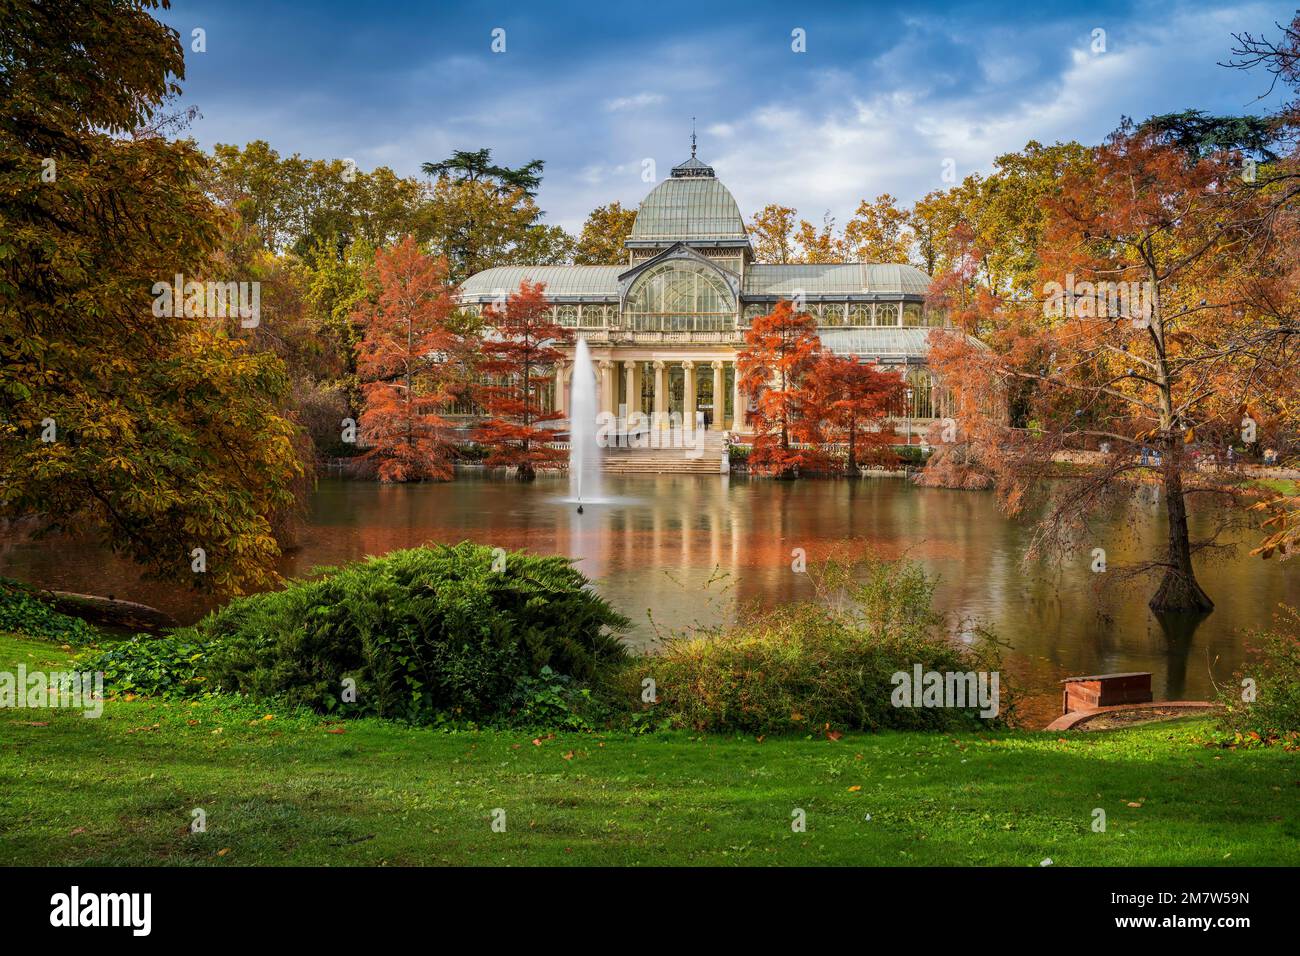 Palacio de Cristal, Buen Retiro Park, Madrid, Spain Stock Photo